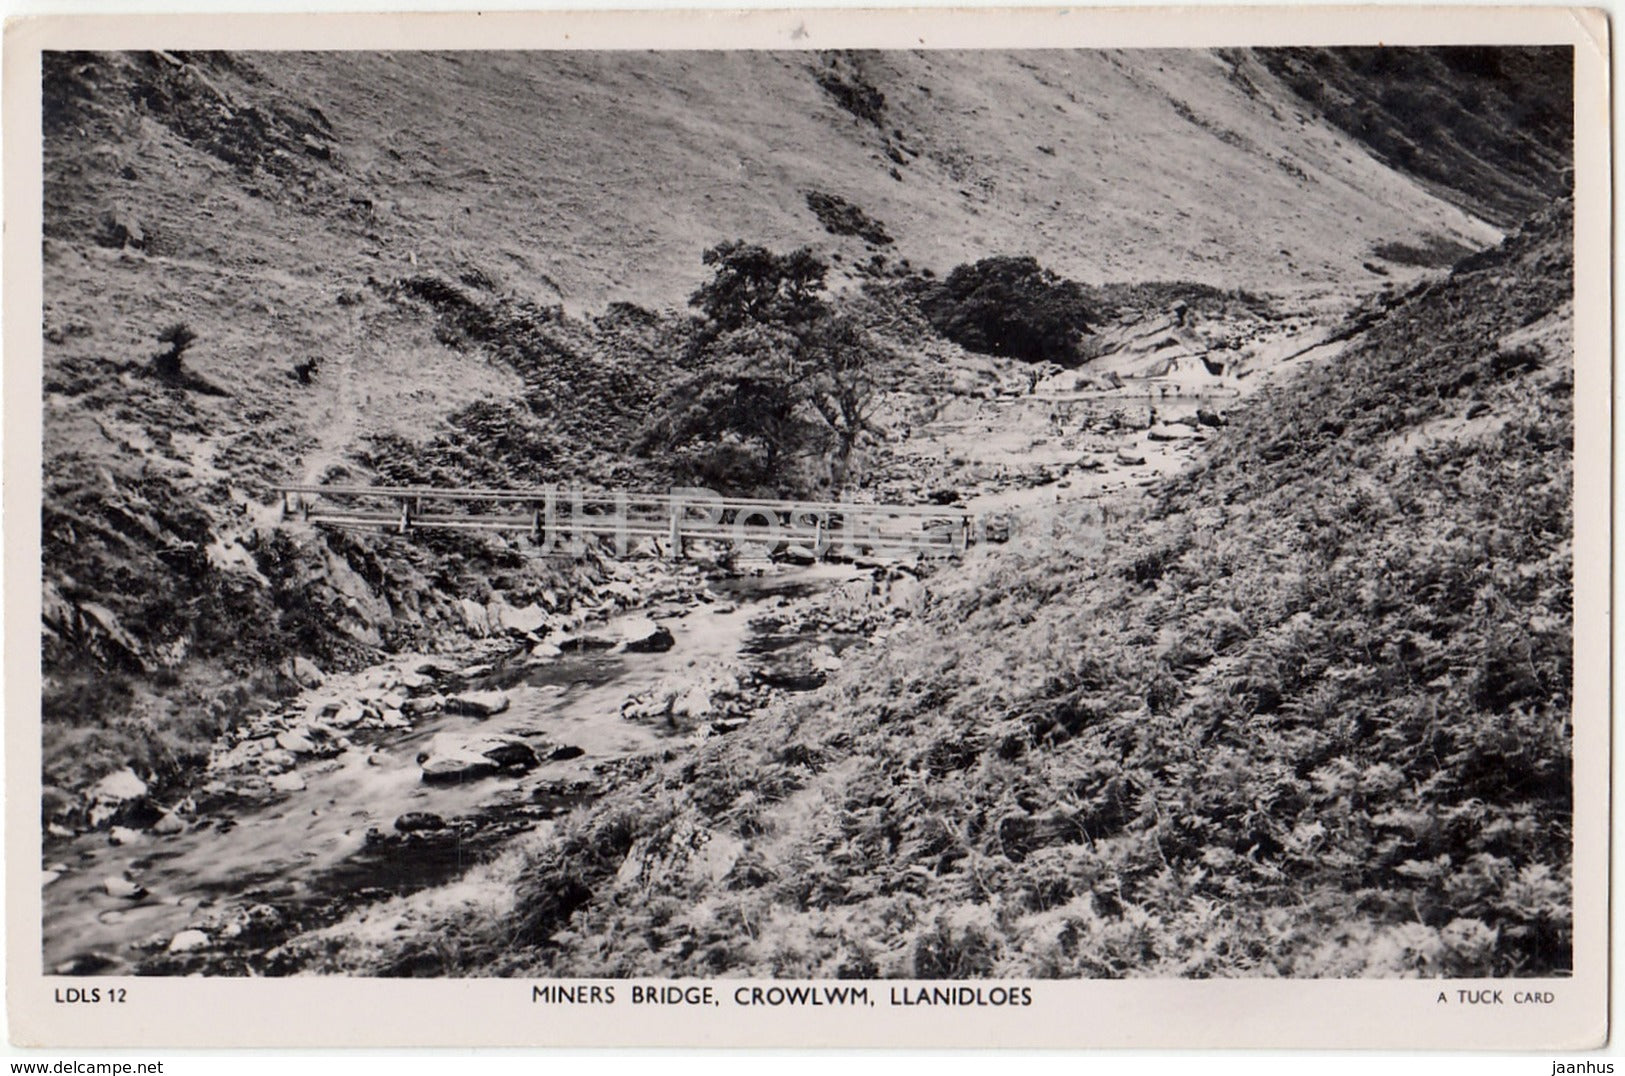 Llanidloes - Crowlwm - Miners Bridge - LDLD 12 - 1952 - United Kingdom - Wales - used - JH Postcards